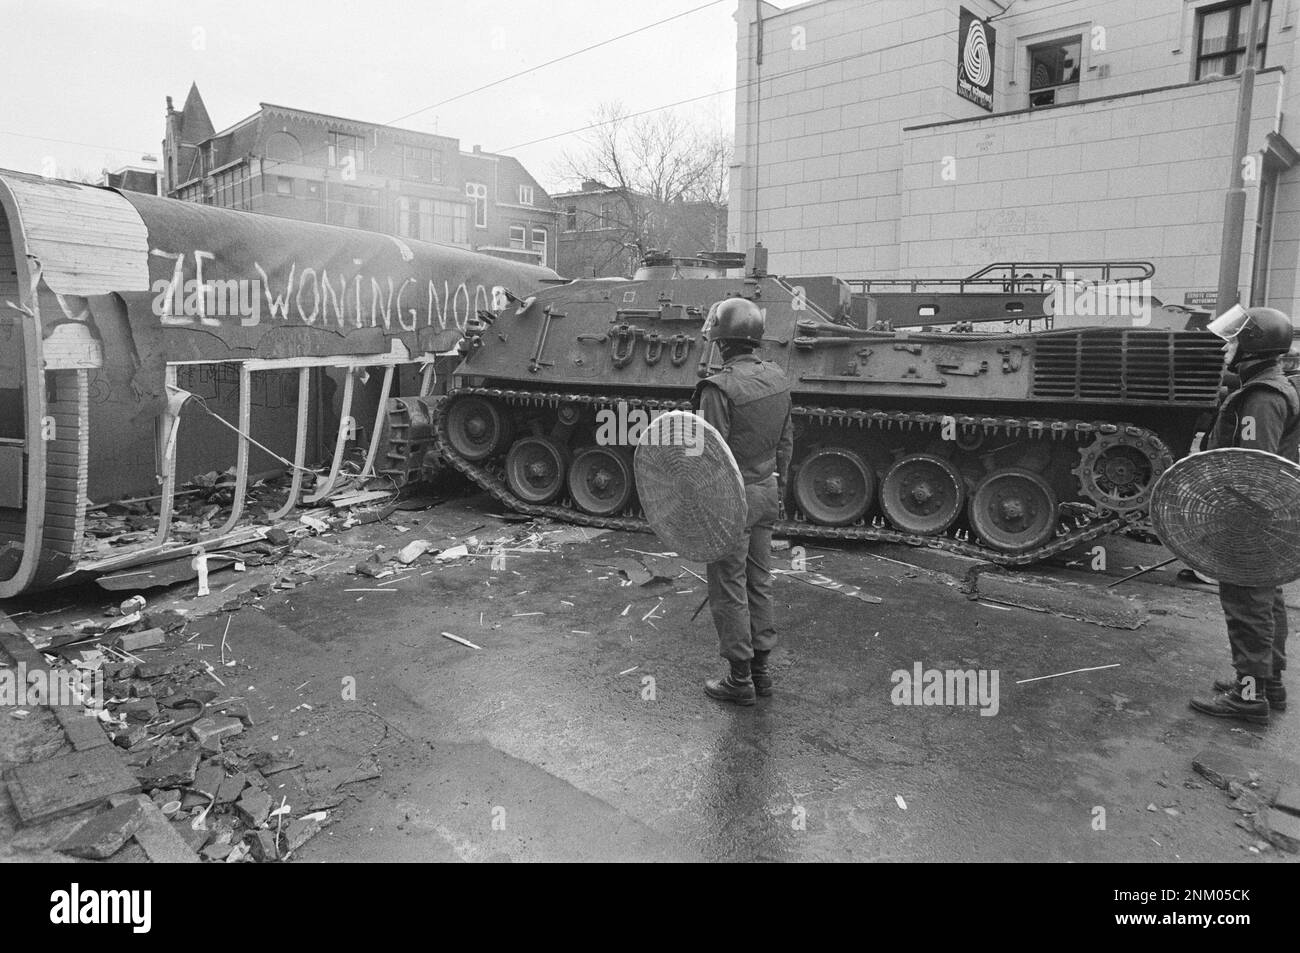 Niederländische Geschichte: Polizei und Armee mit gepanzerten Fahrzeugen und Panzern räumen die Barrikaden in Vondelbuurt, Amsterdam; Tankdozer vom Typ Leopard, der zu einem Dschinni gehört, räumen sich auf (Squatters-Aufstände) ca. 3. März 1980 Stockfoto